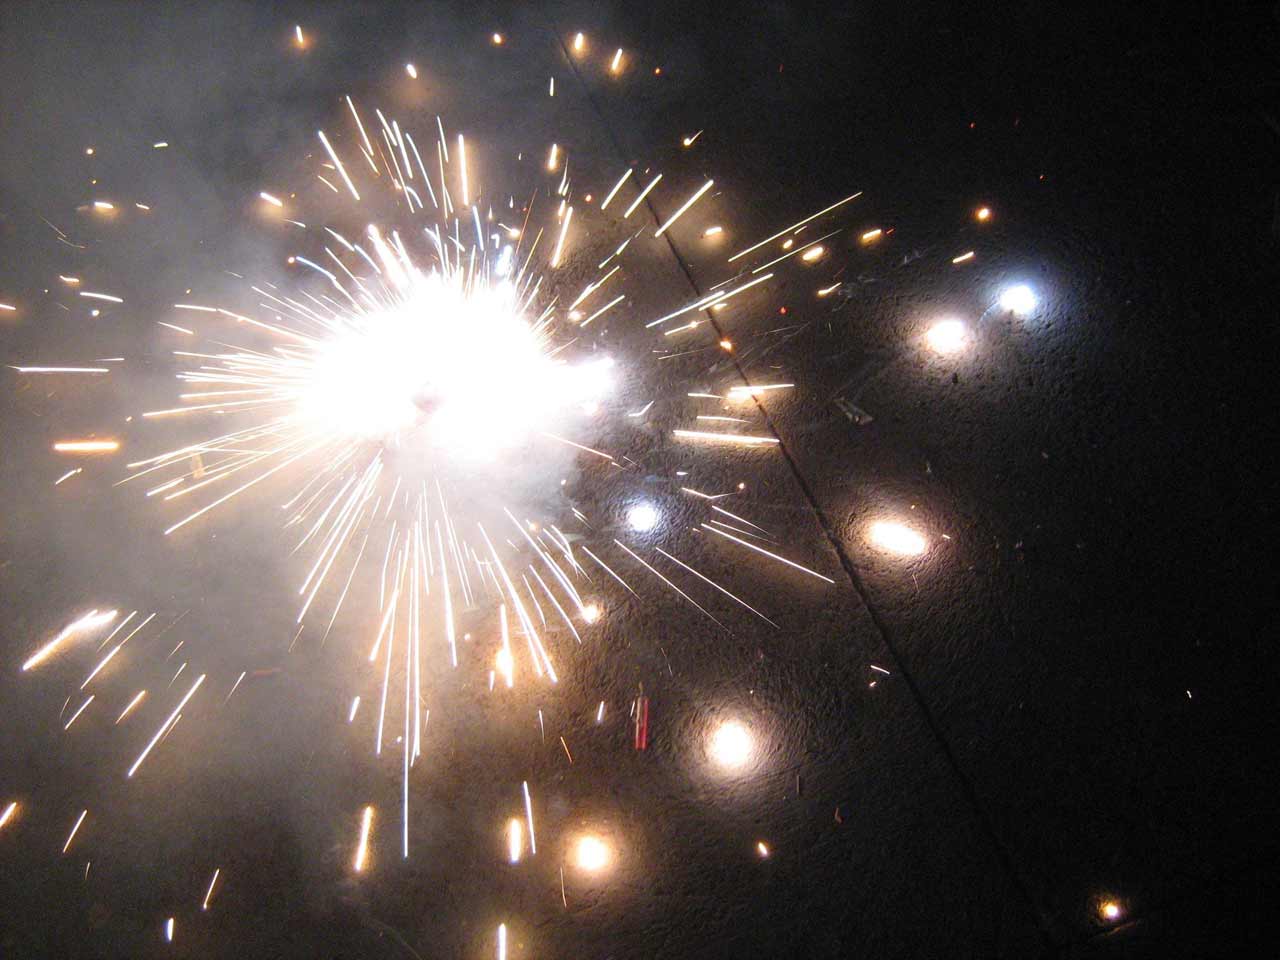 https://blogger.googleusercontent.com/img/b/R29vZ2xl/AVvXsEjQXjIuB9-Rli8ZS8BZ60wiJL8bvF8G7iMdW_5tlL1KPjGBoqsxYP7JRO8CVtQVwXIgjsBgqm40HNibdPhh48ZNbjfAOKPcpJqiKVoPod6qhISVVbpzTpYcsgb7CQJw6AC088UzXMrC8jk/s1600/Diwali+fireworks+wallpapers+3.jpg